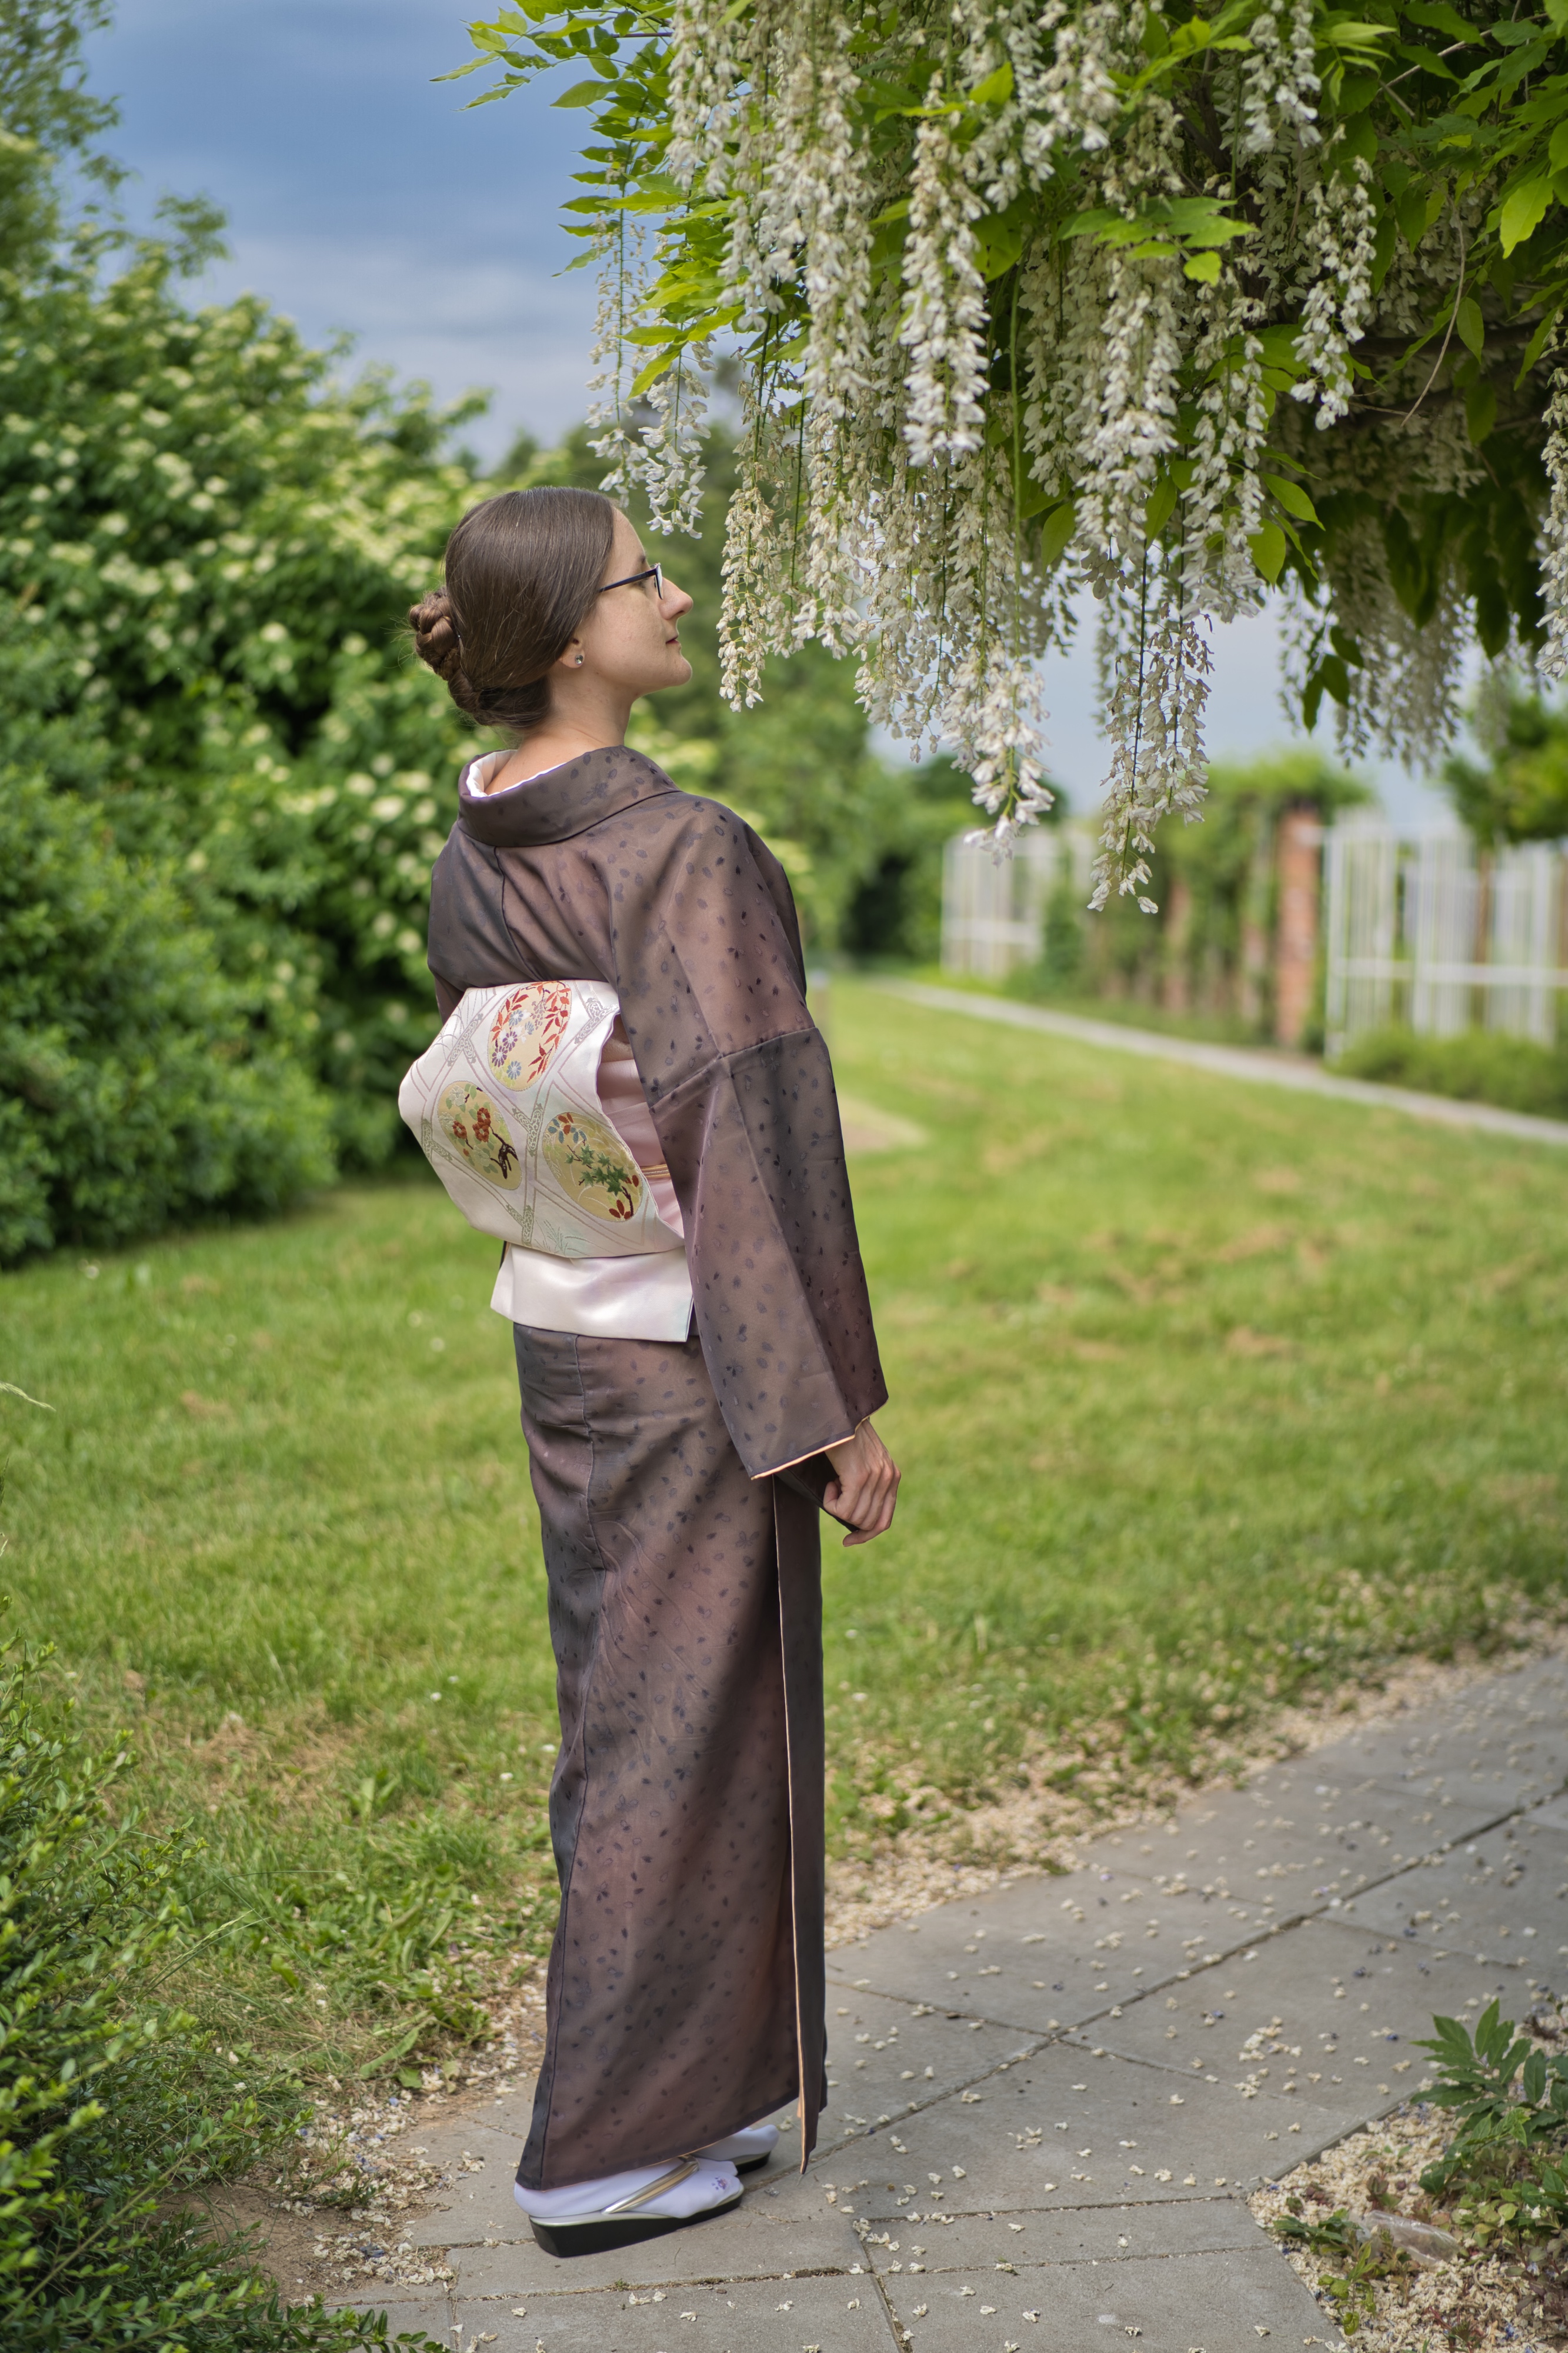 Kimono - tradiční japonské oděvy